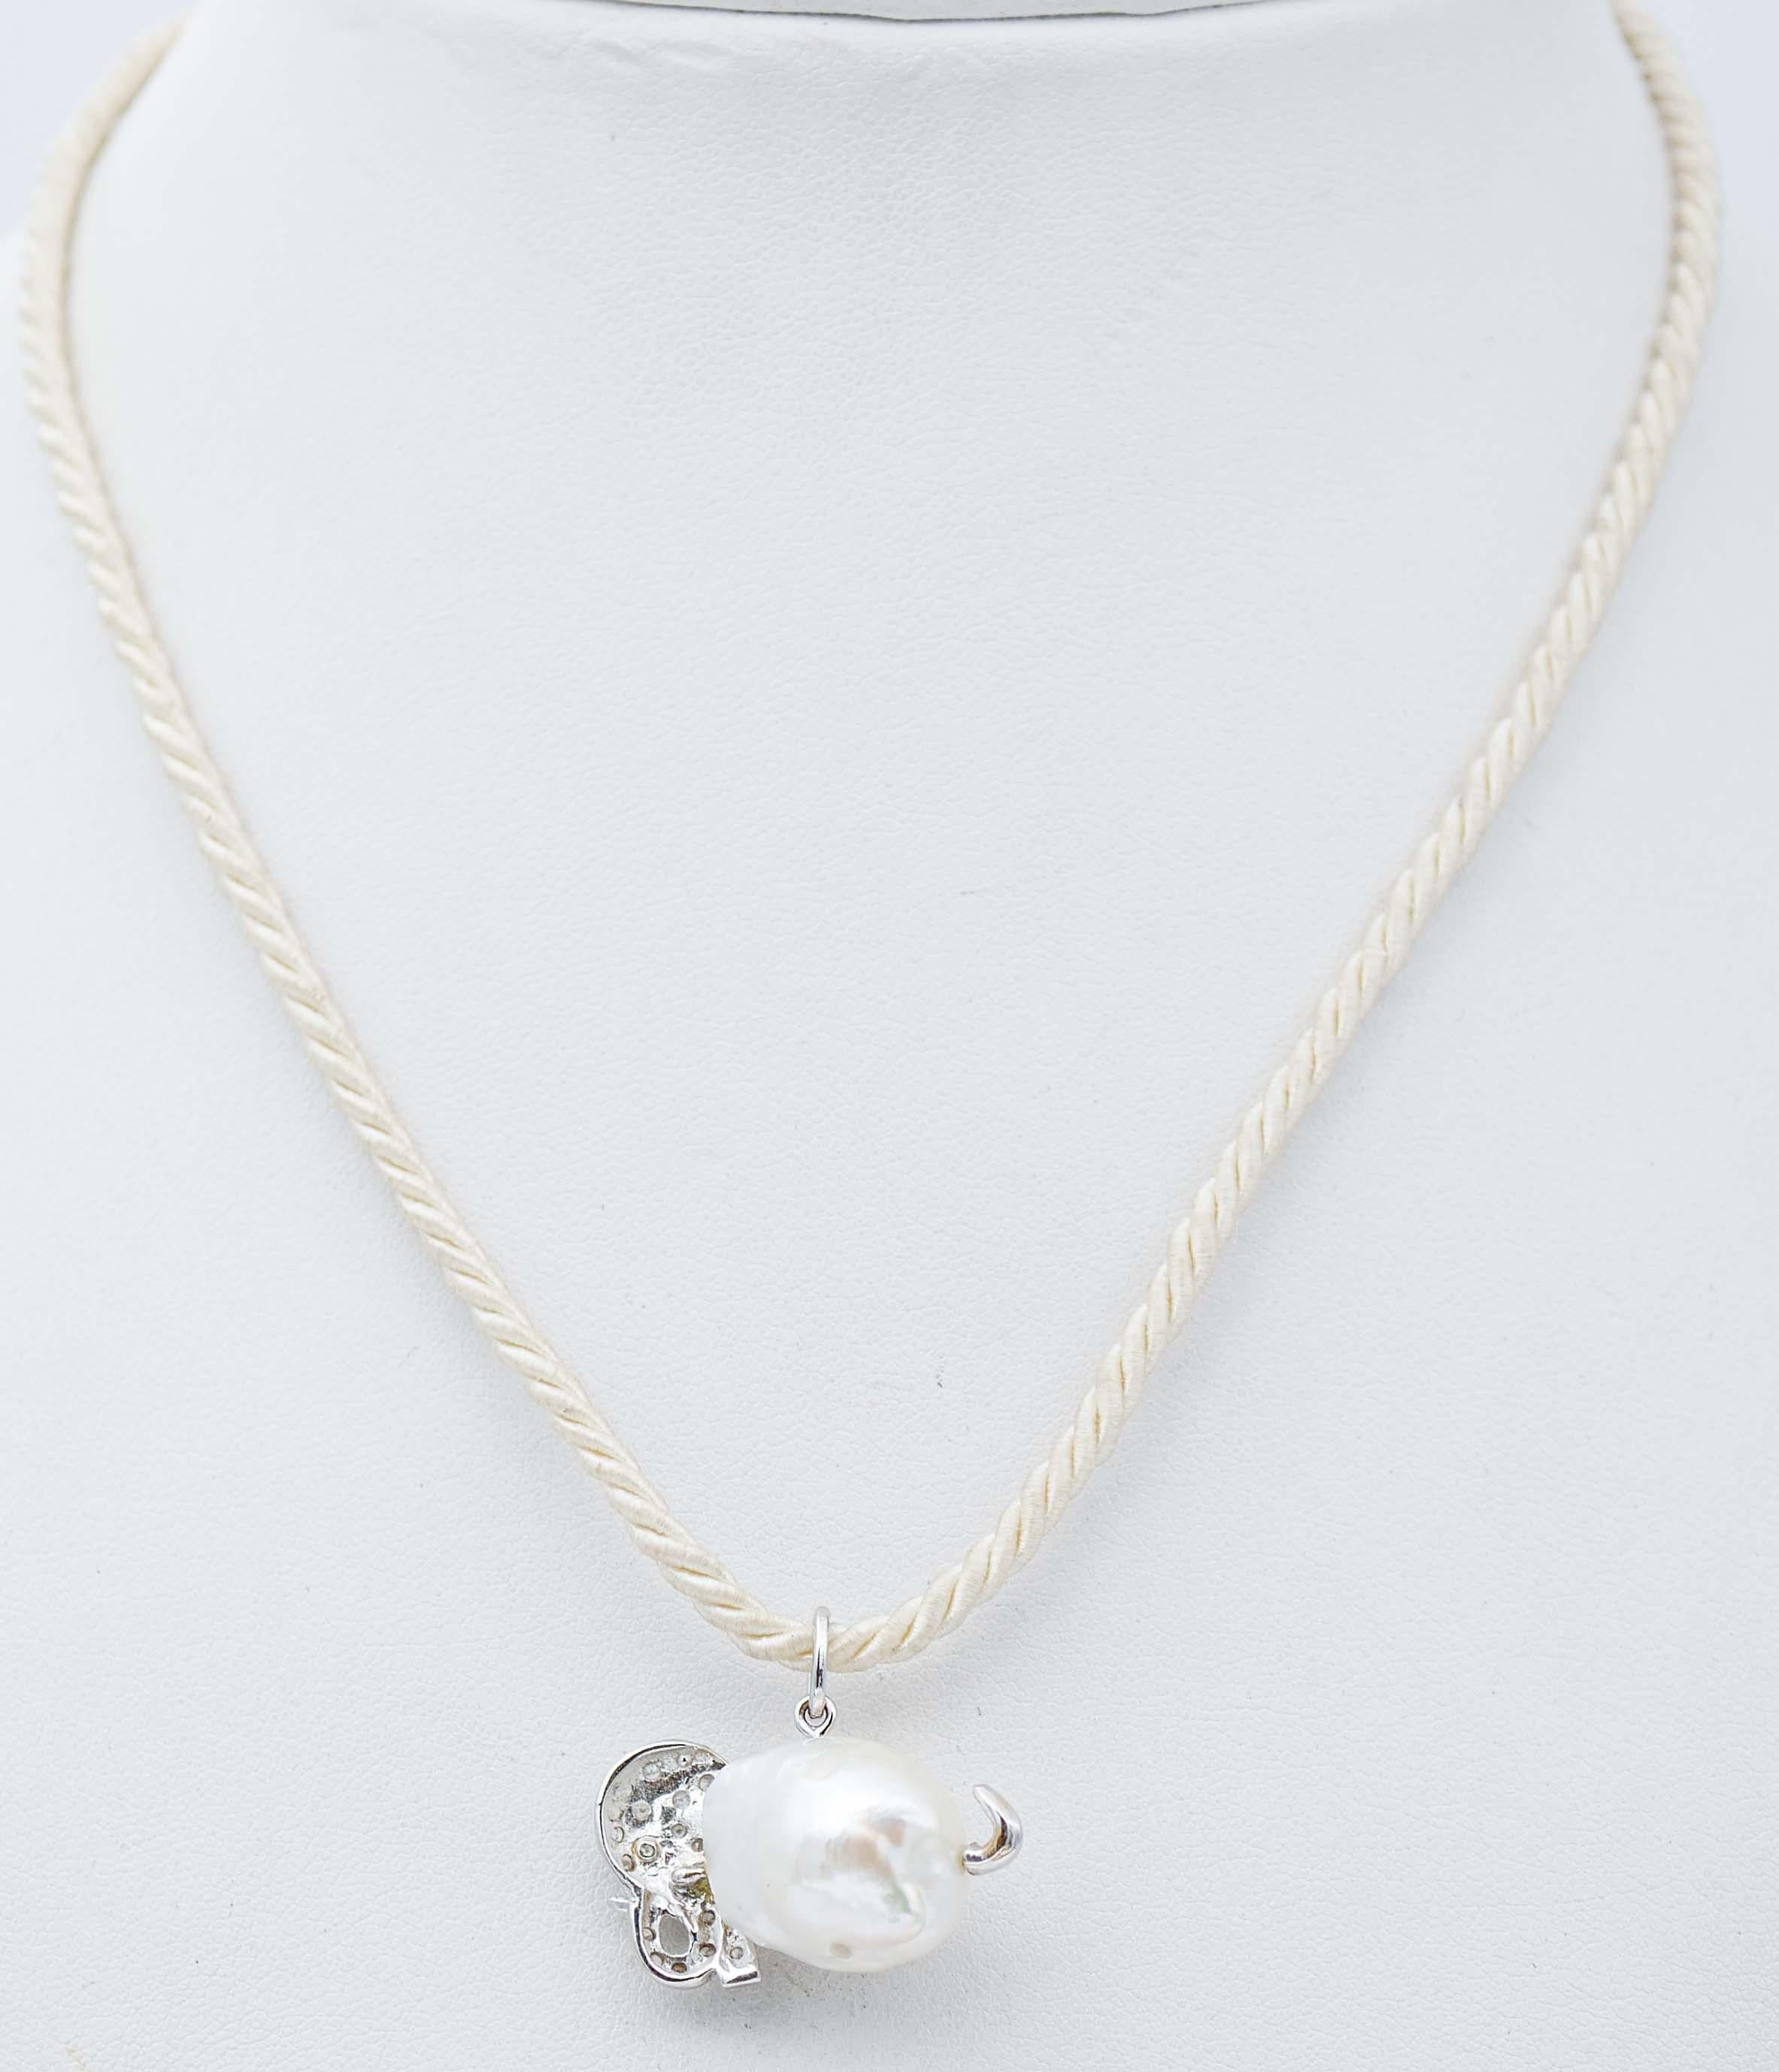 Retro Baroque Pearl, Black and White Diamonds, 14Kt White Gold Pendant Necklace For Sale